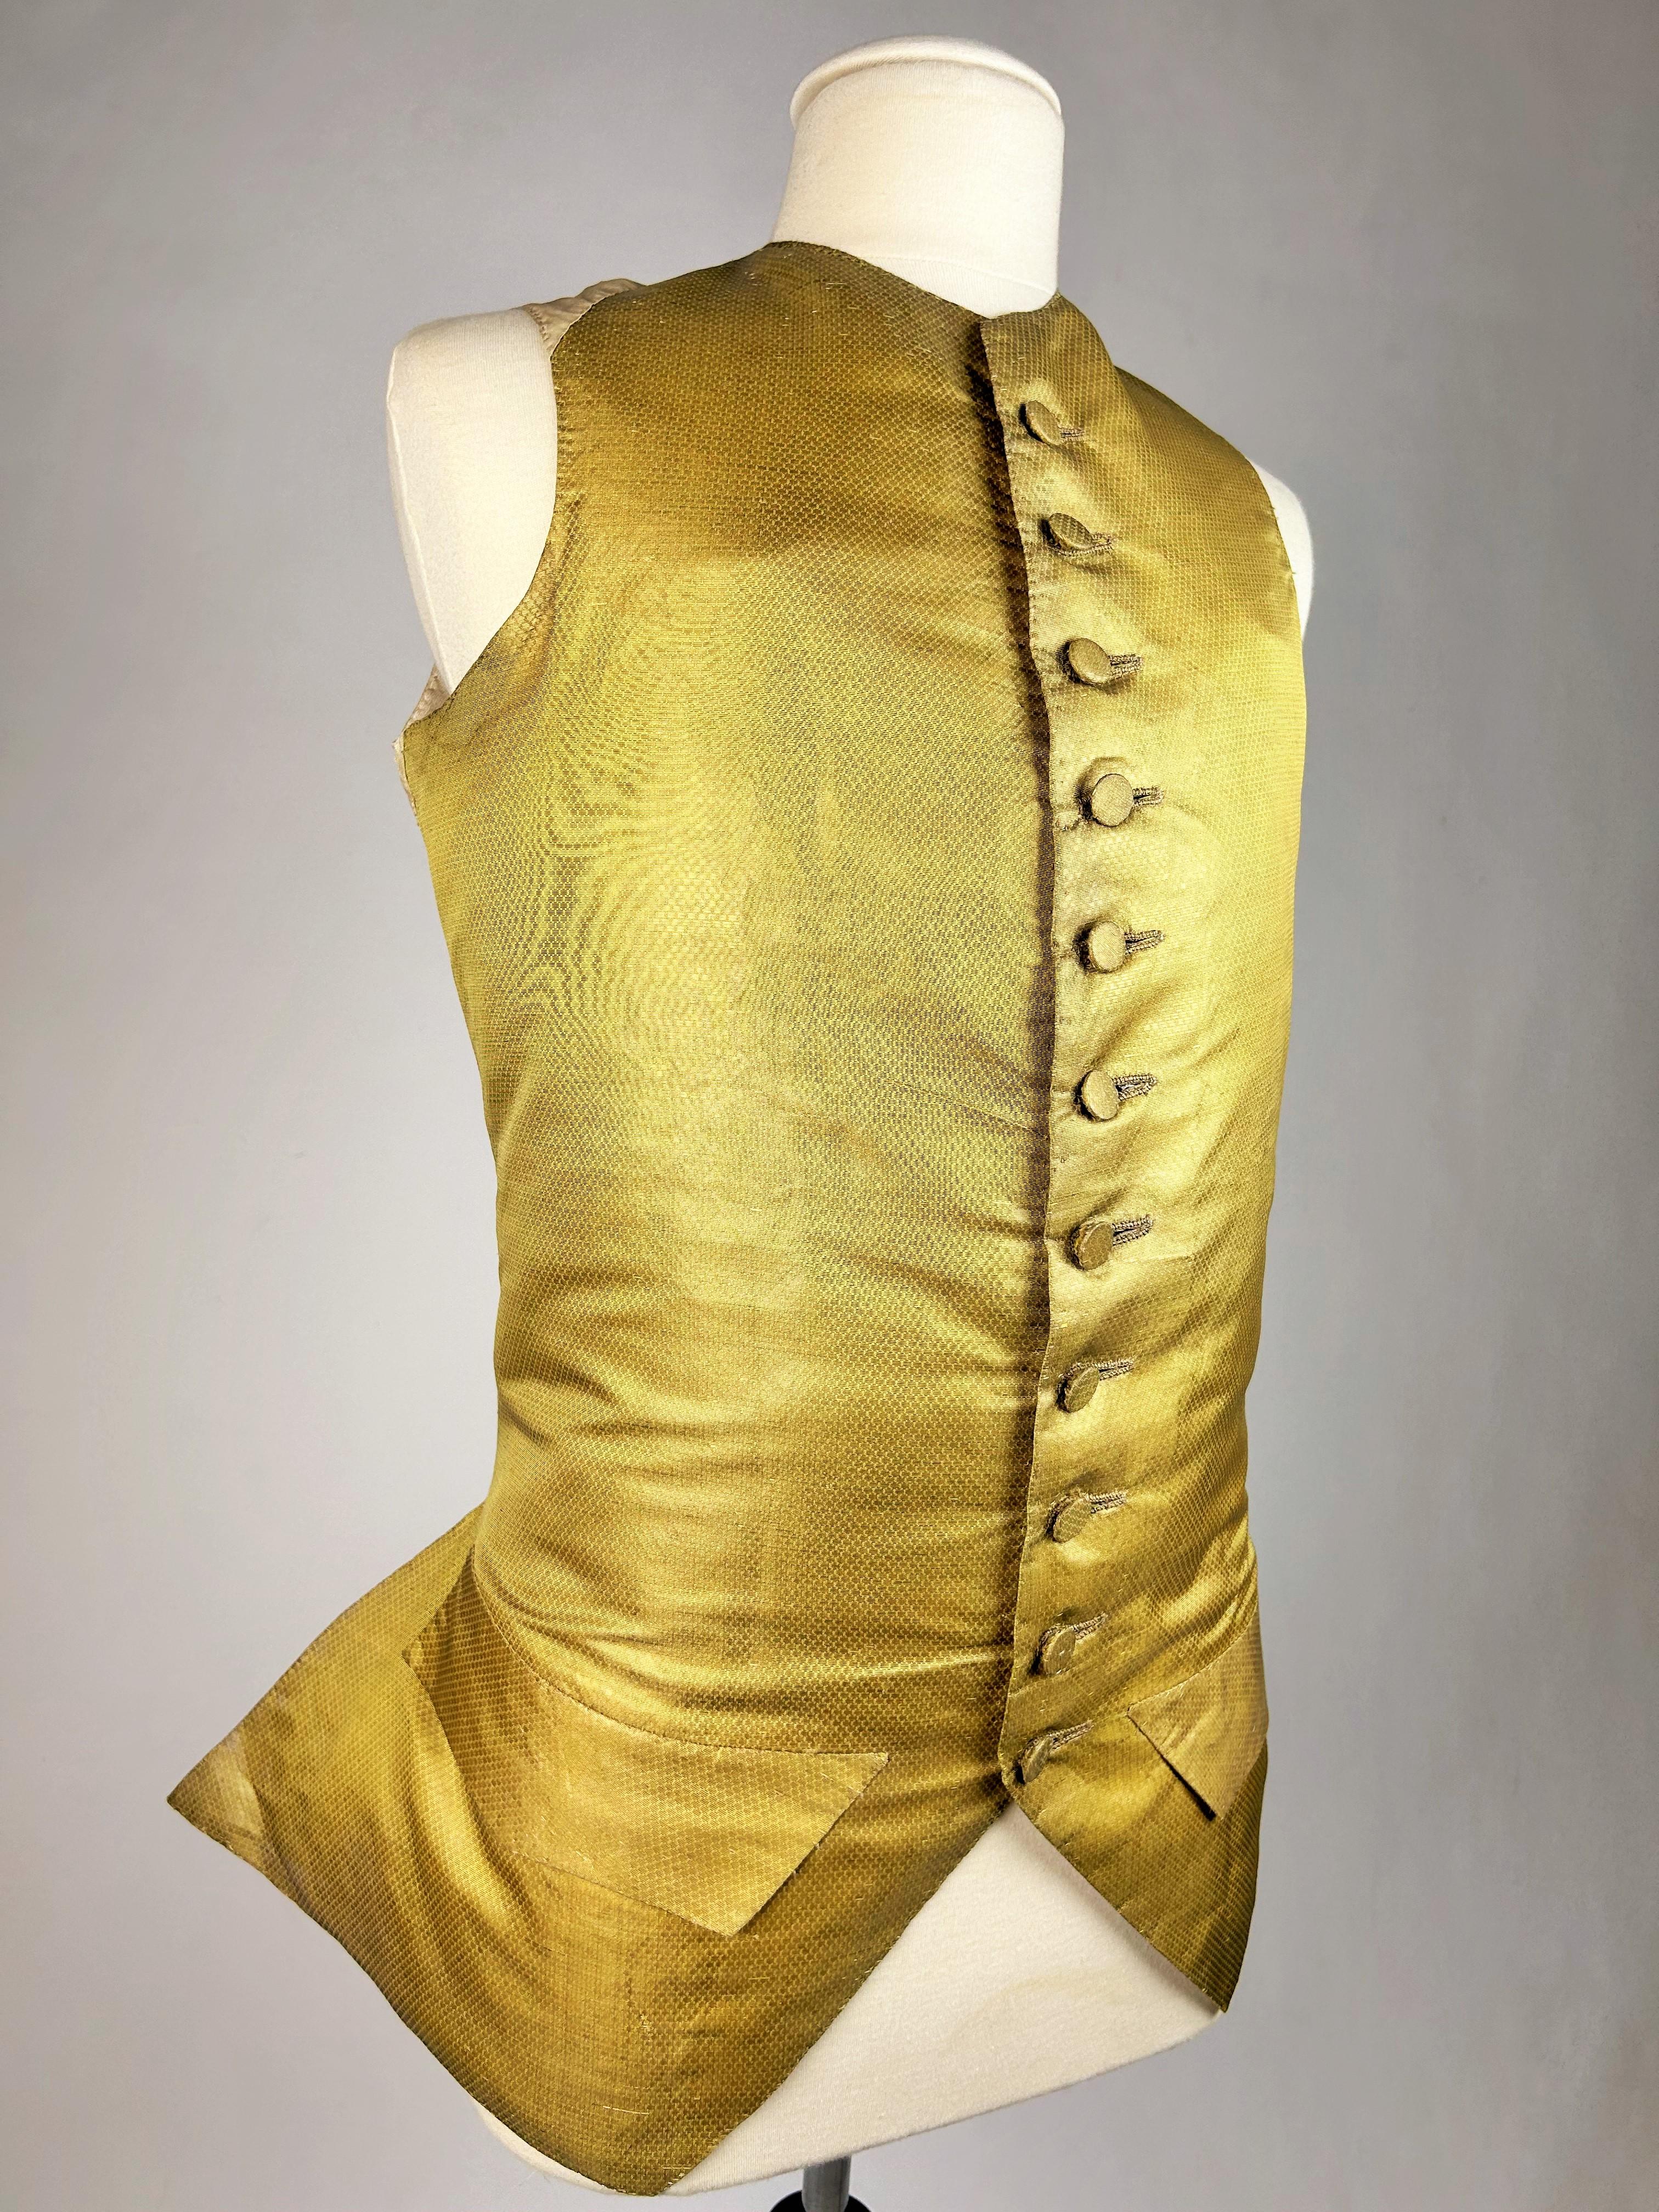 Circa 1770
France

Gilet décolleté en drap d'or façonné de losanges miniatures datant de la fin de la période Louis XV. Coupe ajustée, col ras du cou, avec boutons recouverts de la même matière. Dos et doublure en coton écru. Pas de trous ni de